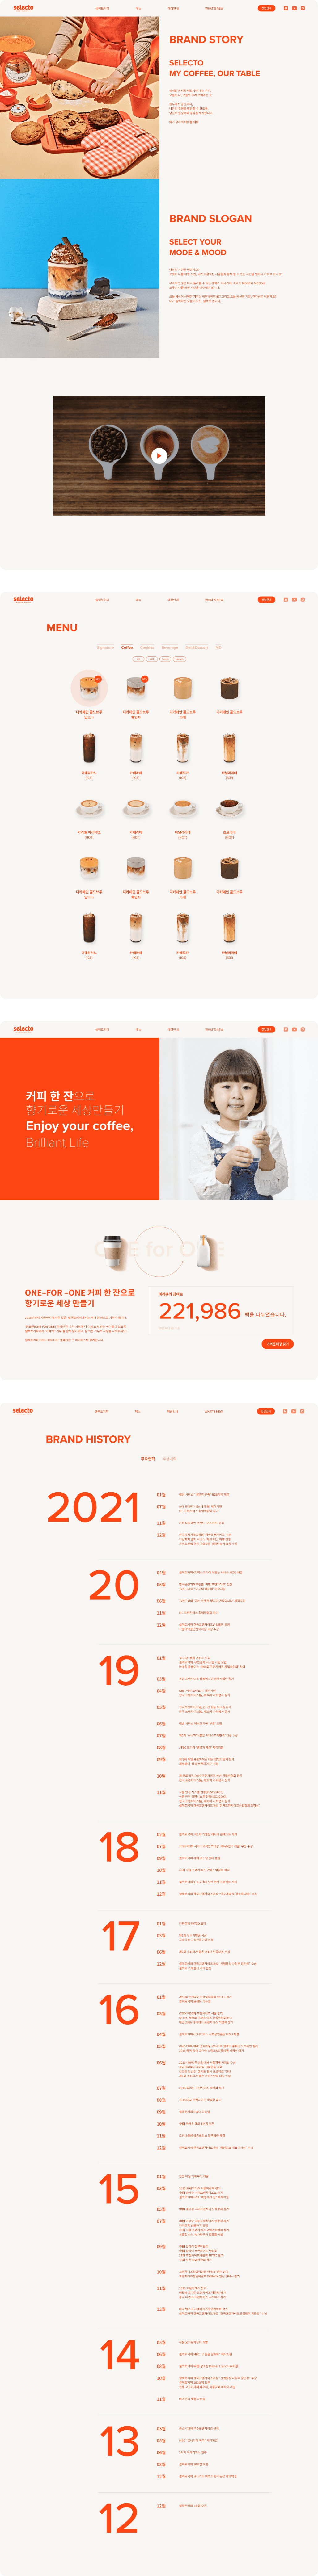 셀렉토 커피 웹 페이지 입니다.